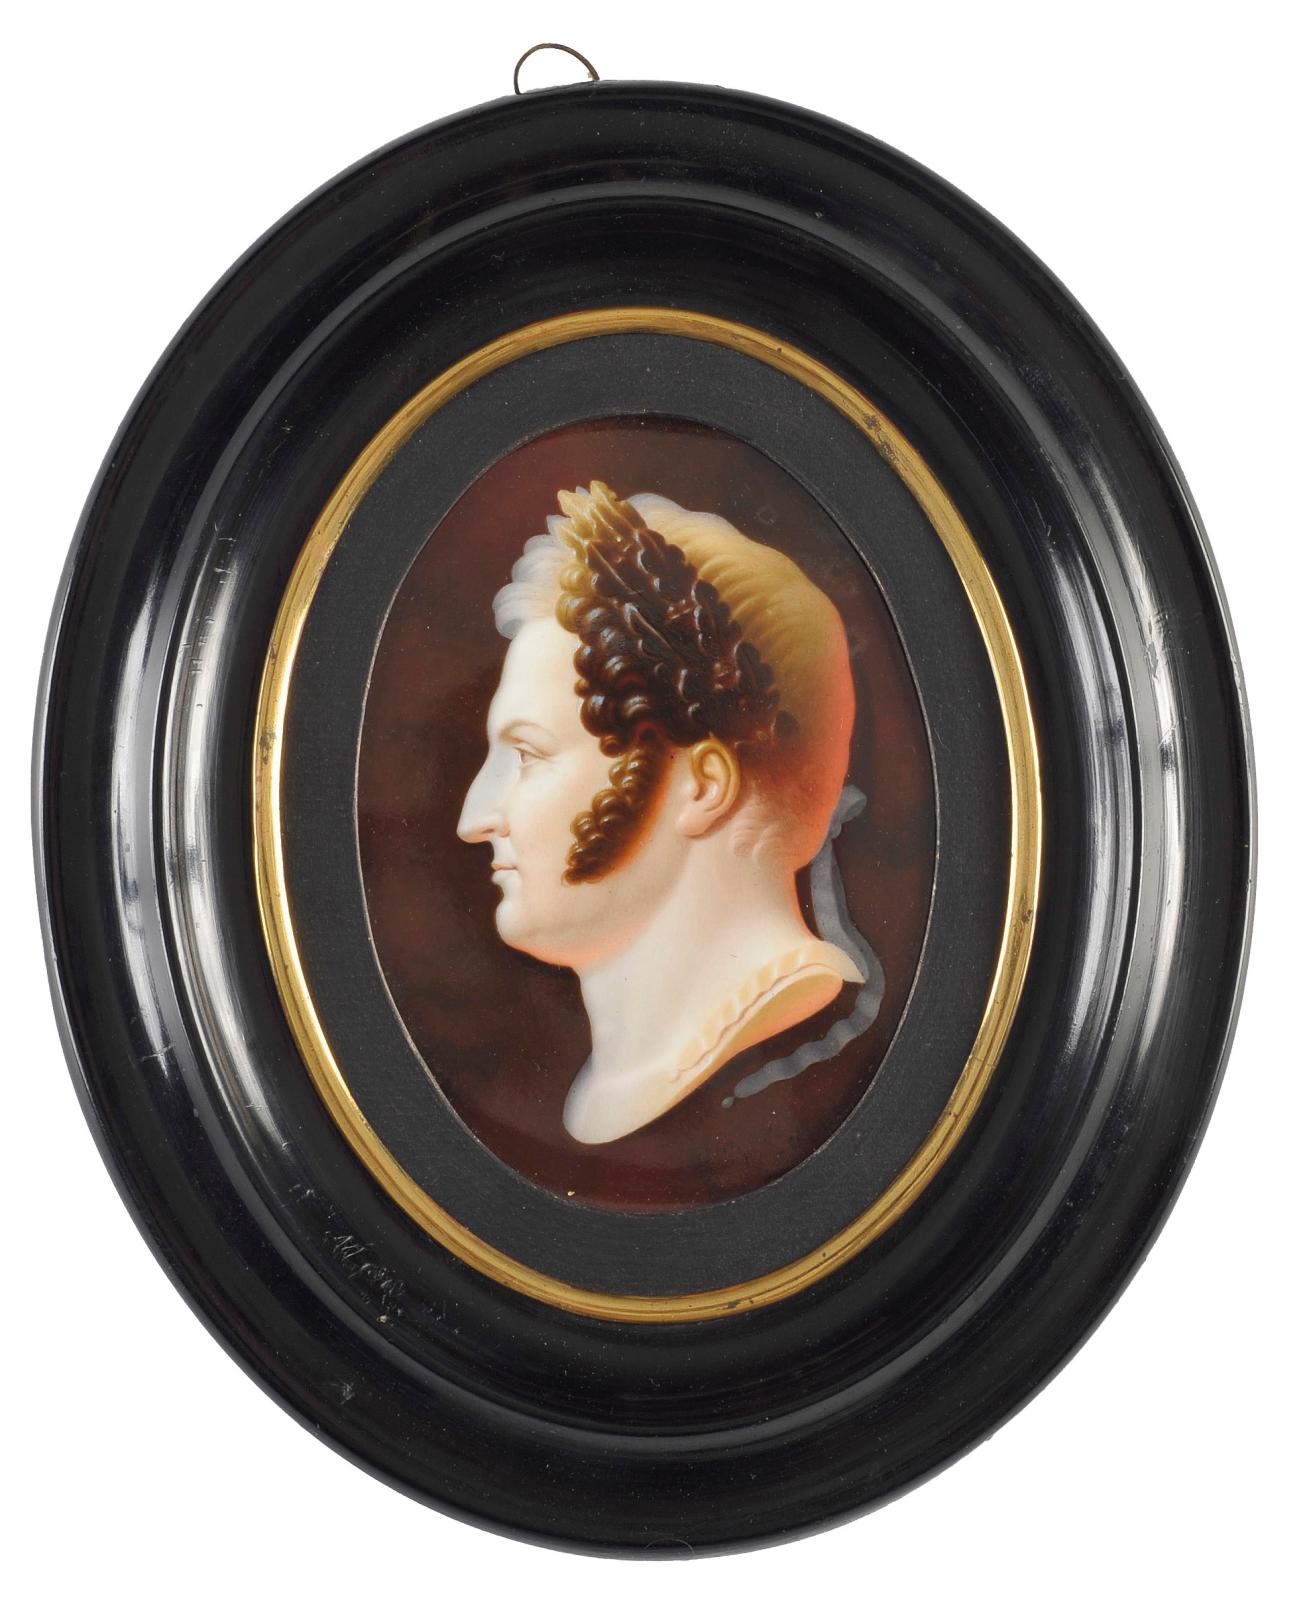 13 125 € frais compris. Louis-Bertin Parant (1768-1851), Portrait de Louis-Philippe, roi des Français à l’antique selon l’iconographie off